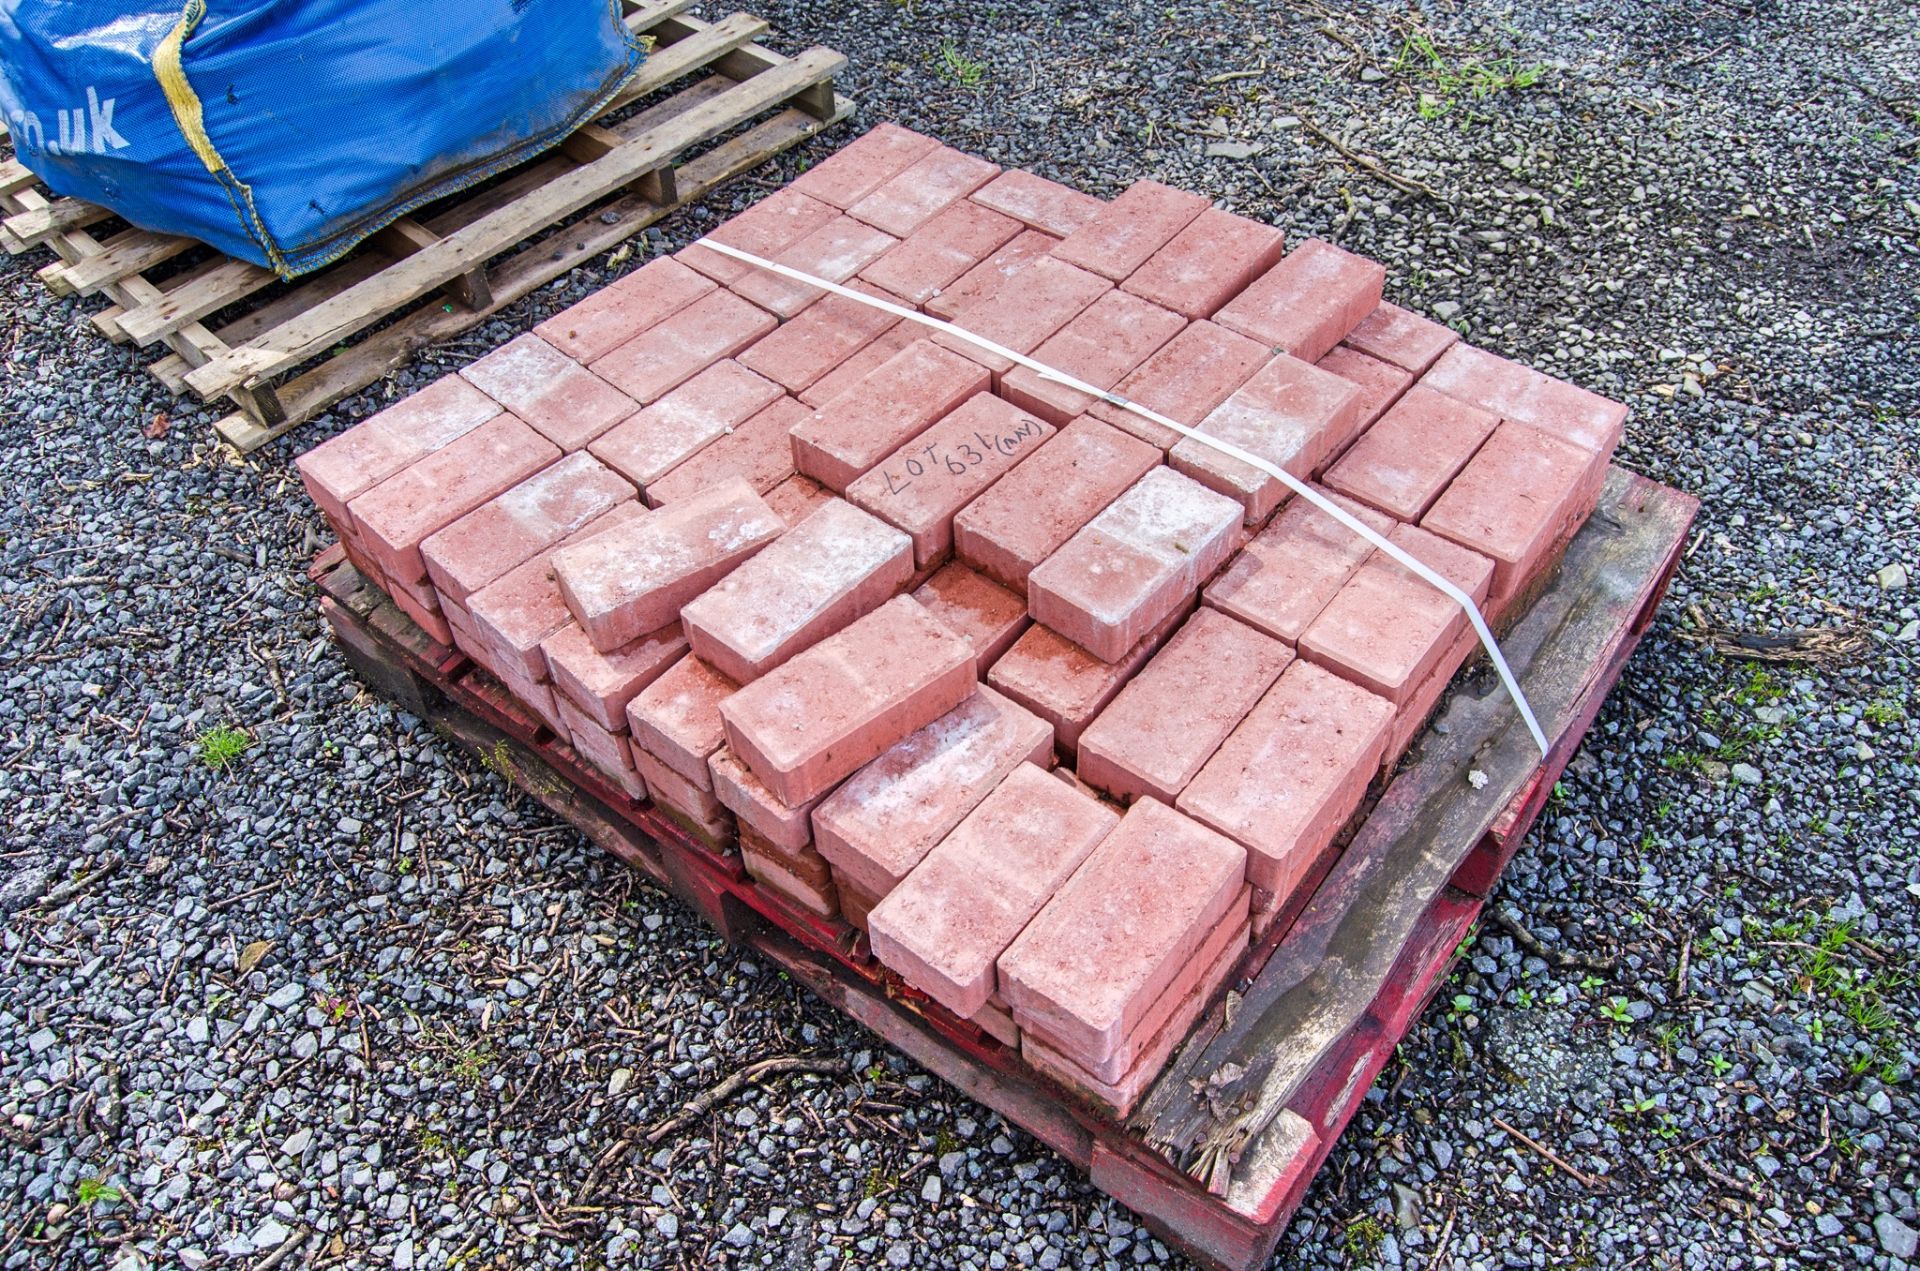 Pallet of red paving blocks